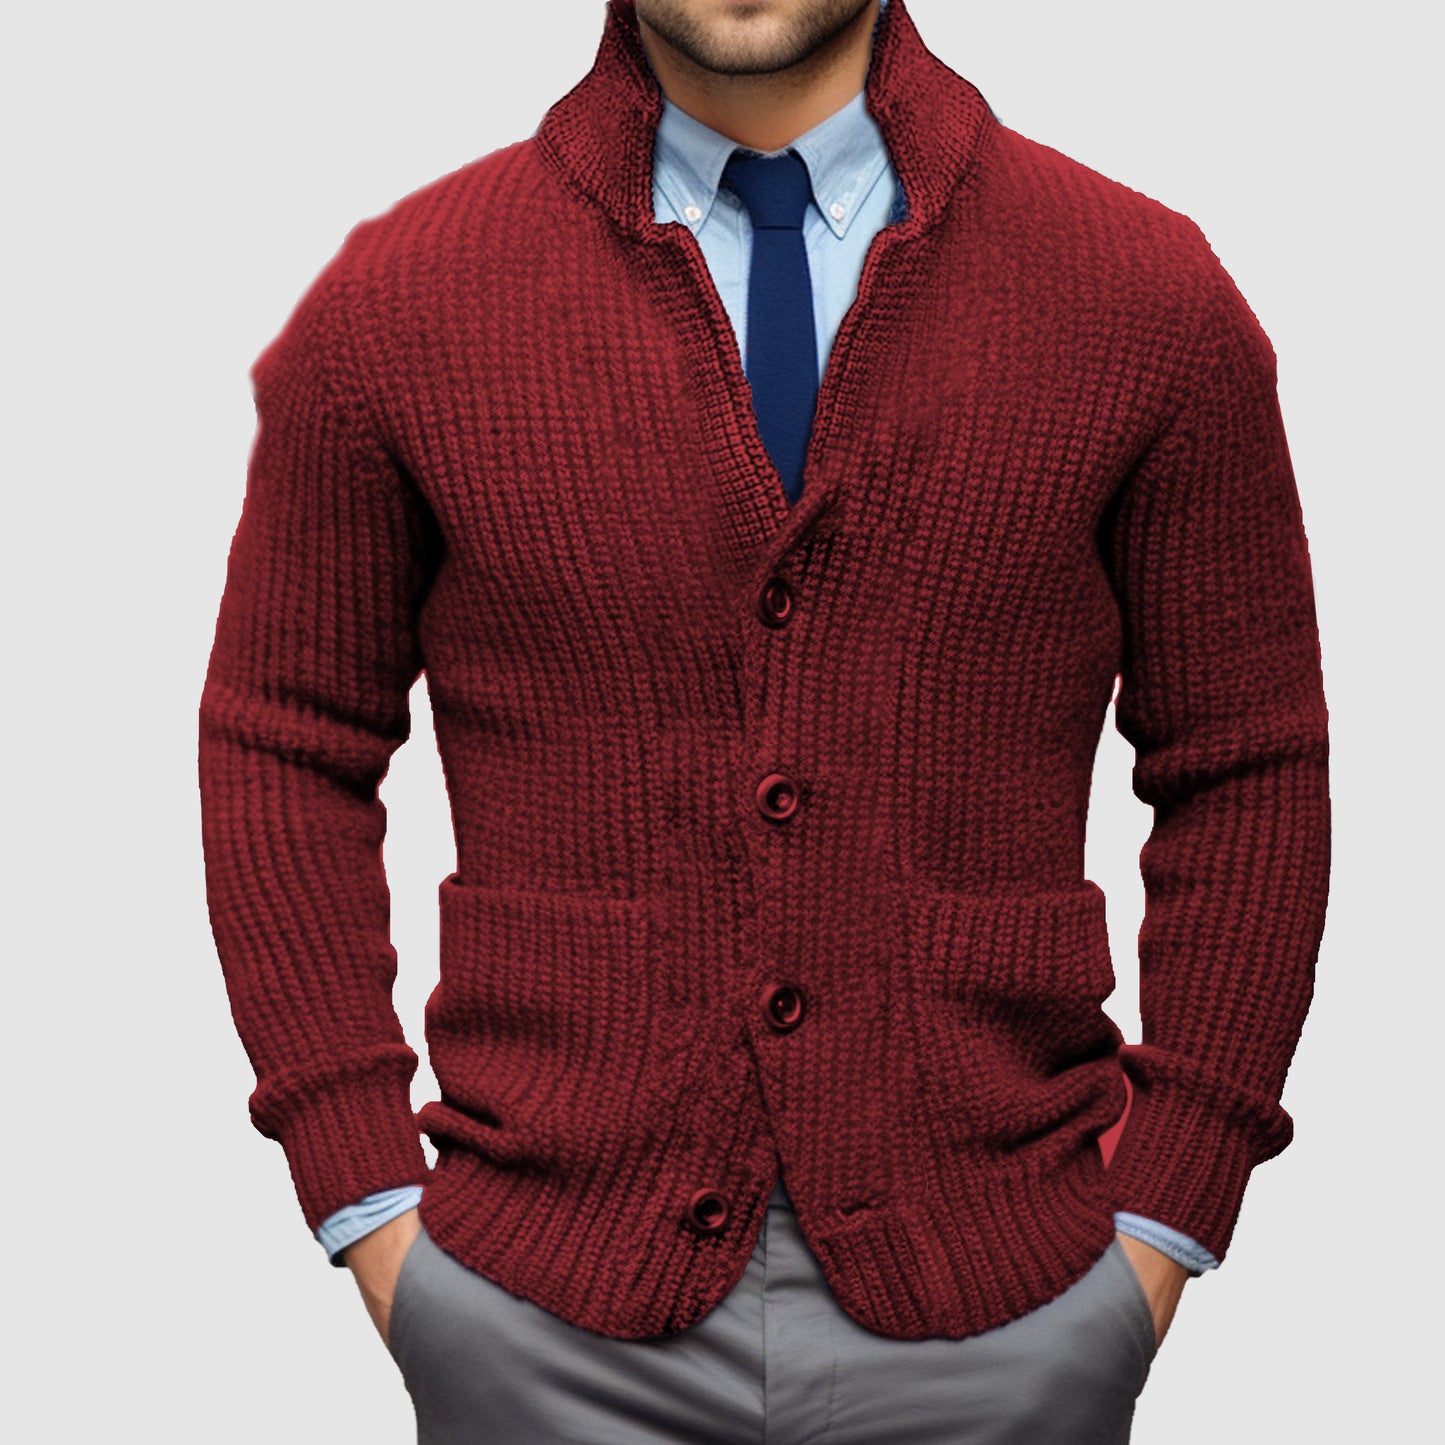 Men's Standing Collar Cardigan Warm Jacket